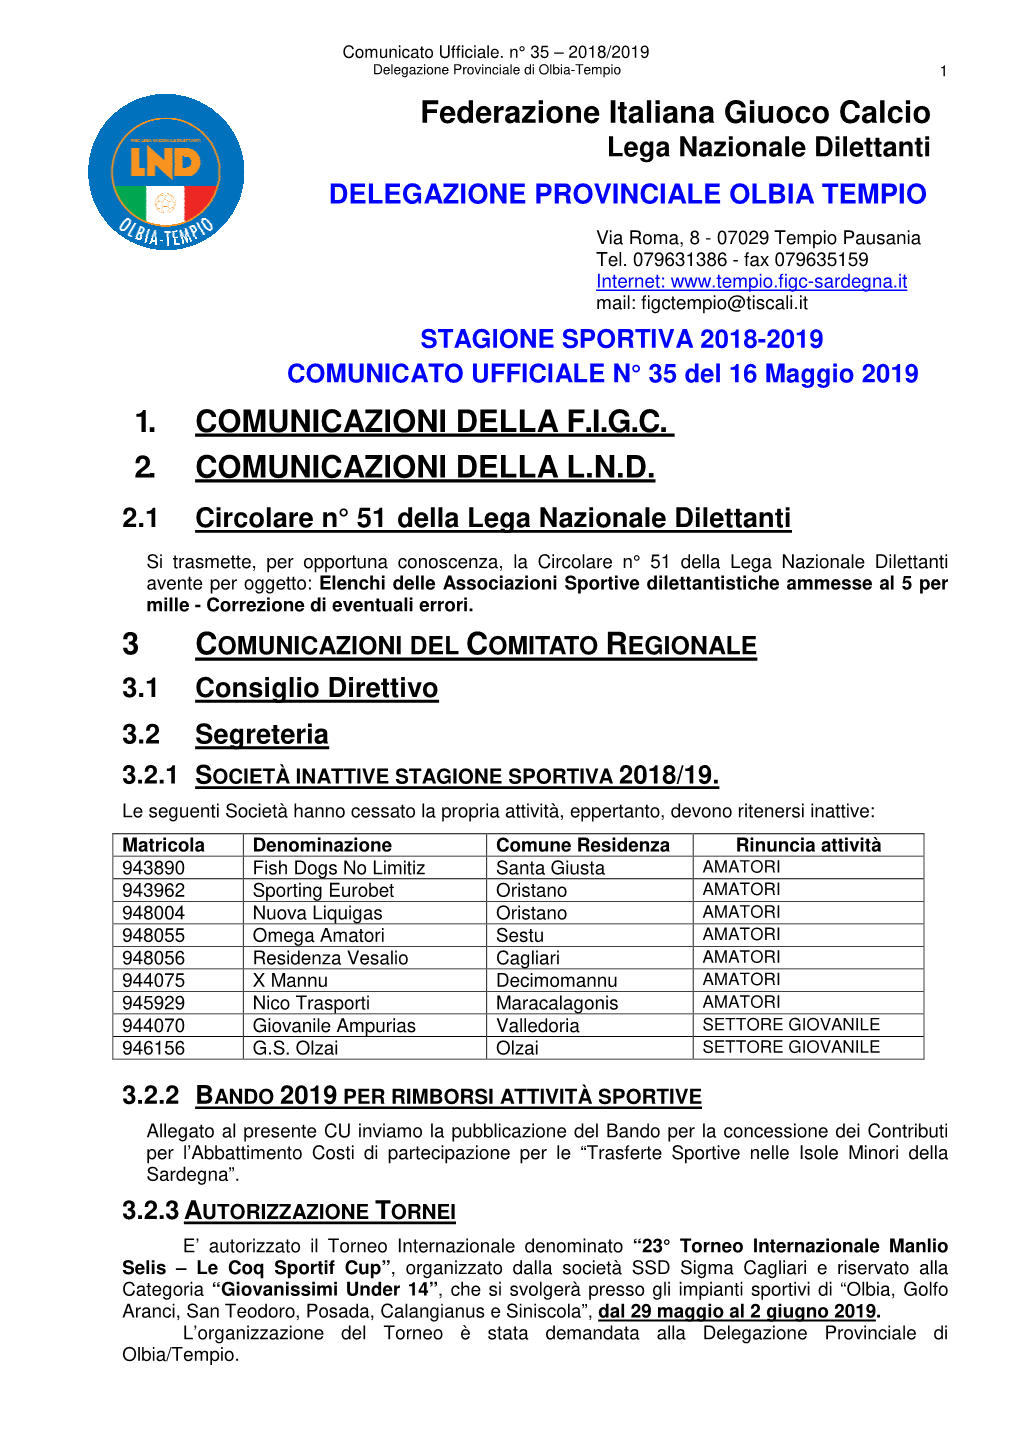 Federazione Italiana Giuoco Calcio 1. COMUNICAZIONI DELLA F.I.G.C. 2